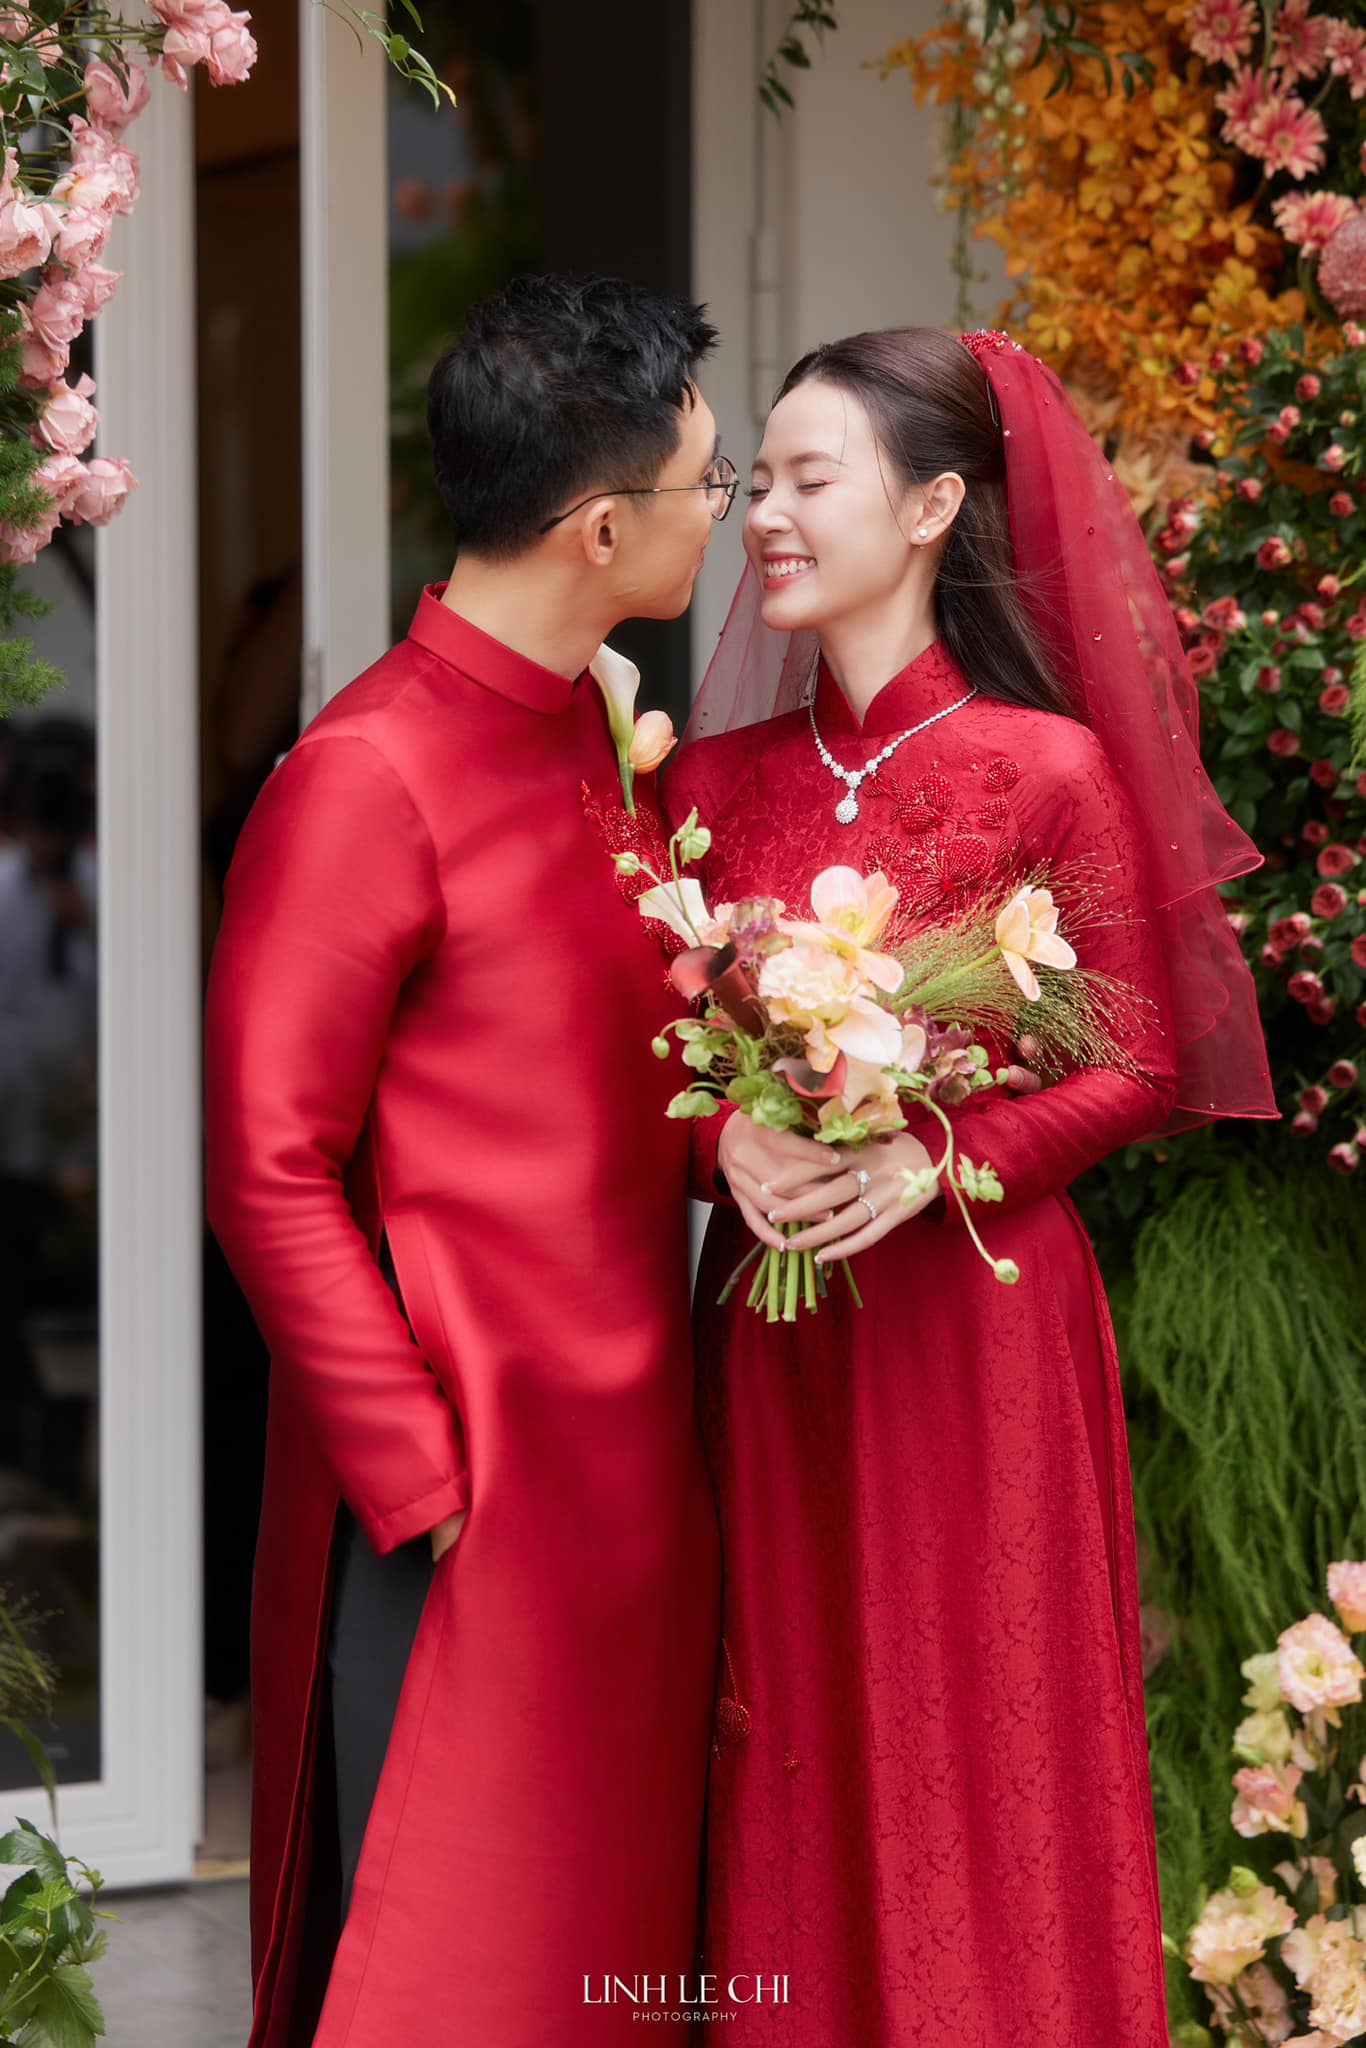 Hé lộ không gian đám cưới xa hoa của Midu - Minh Đạt: Cô dâu phải di chuyển bằng scooter vì quá rộng, thi công 4 ngày 4 đêm - Ảnh 10.